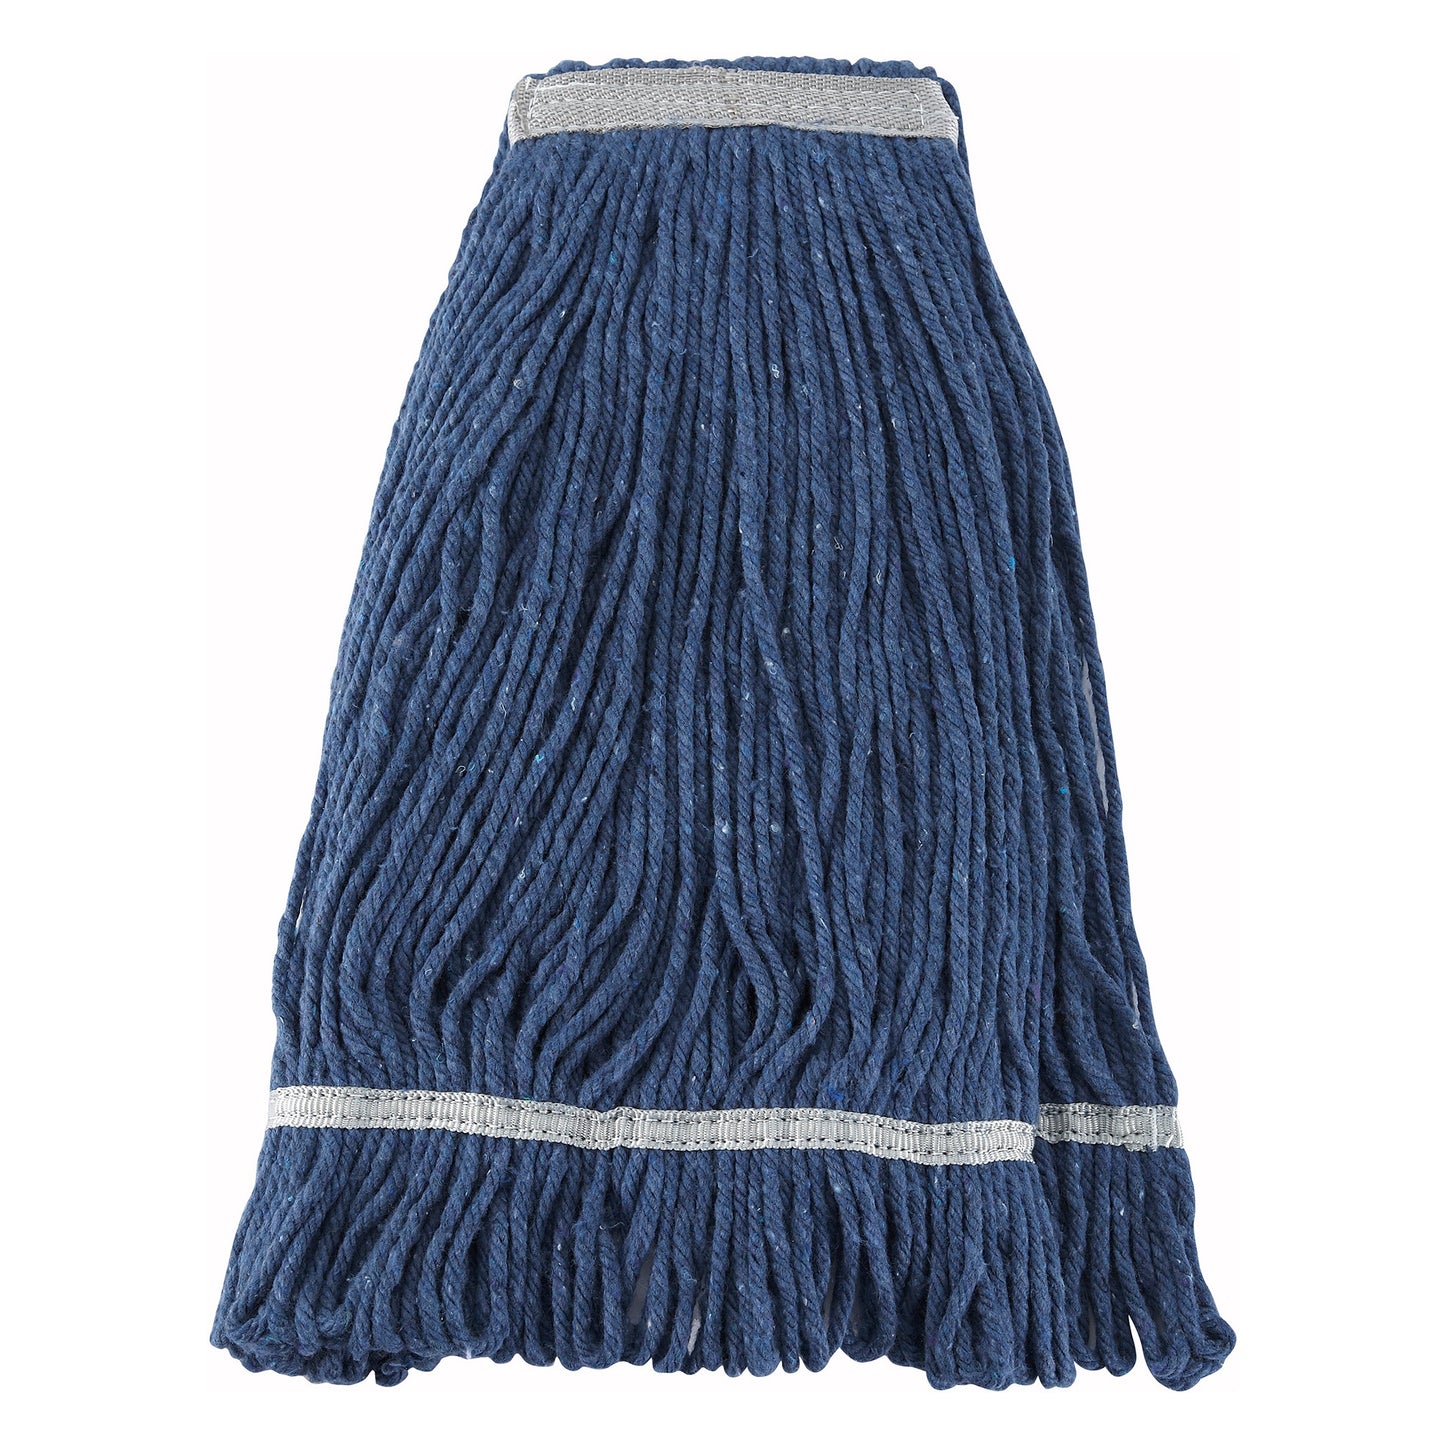 MOP-24 - Premium Cotton-Poly Blend Looped End Wet Mop Head - Blue - 24oz/600g